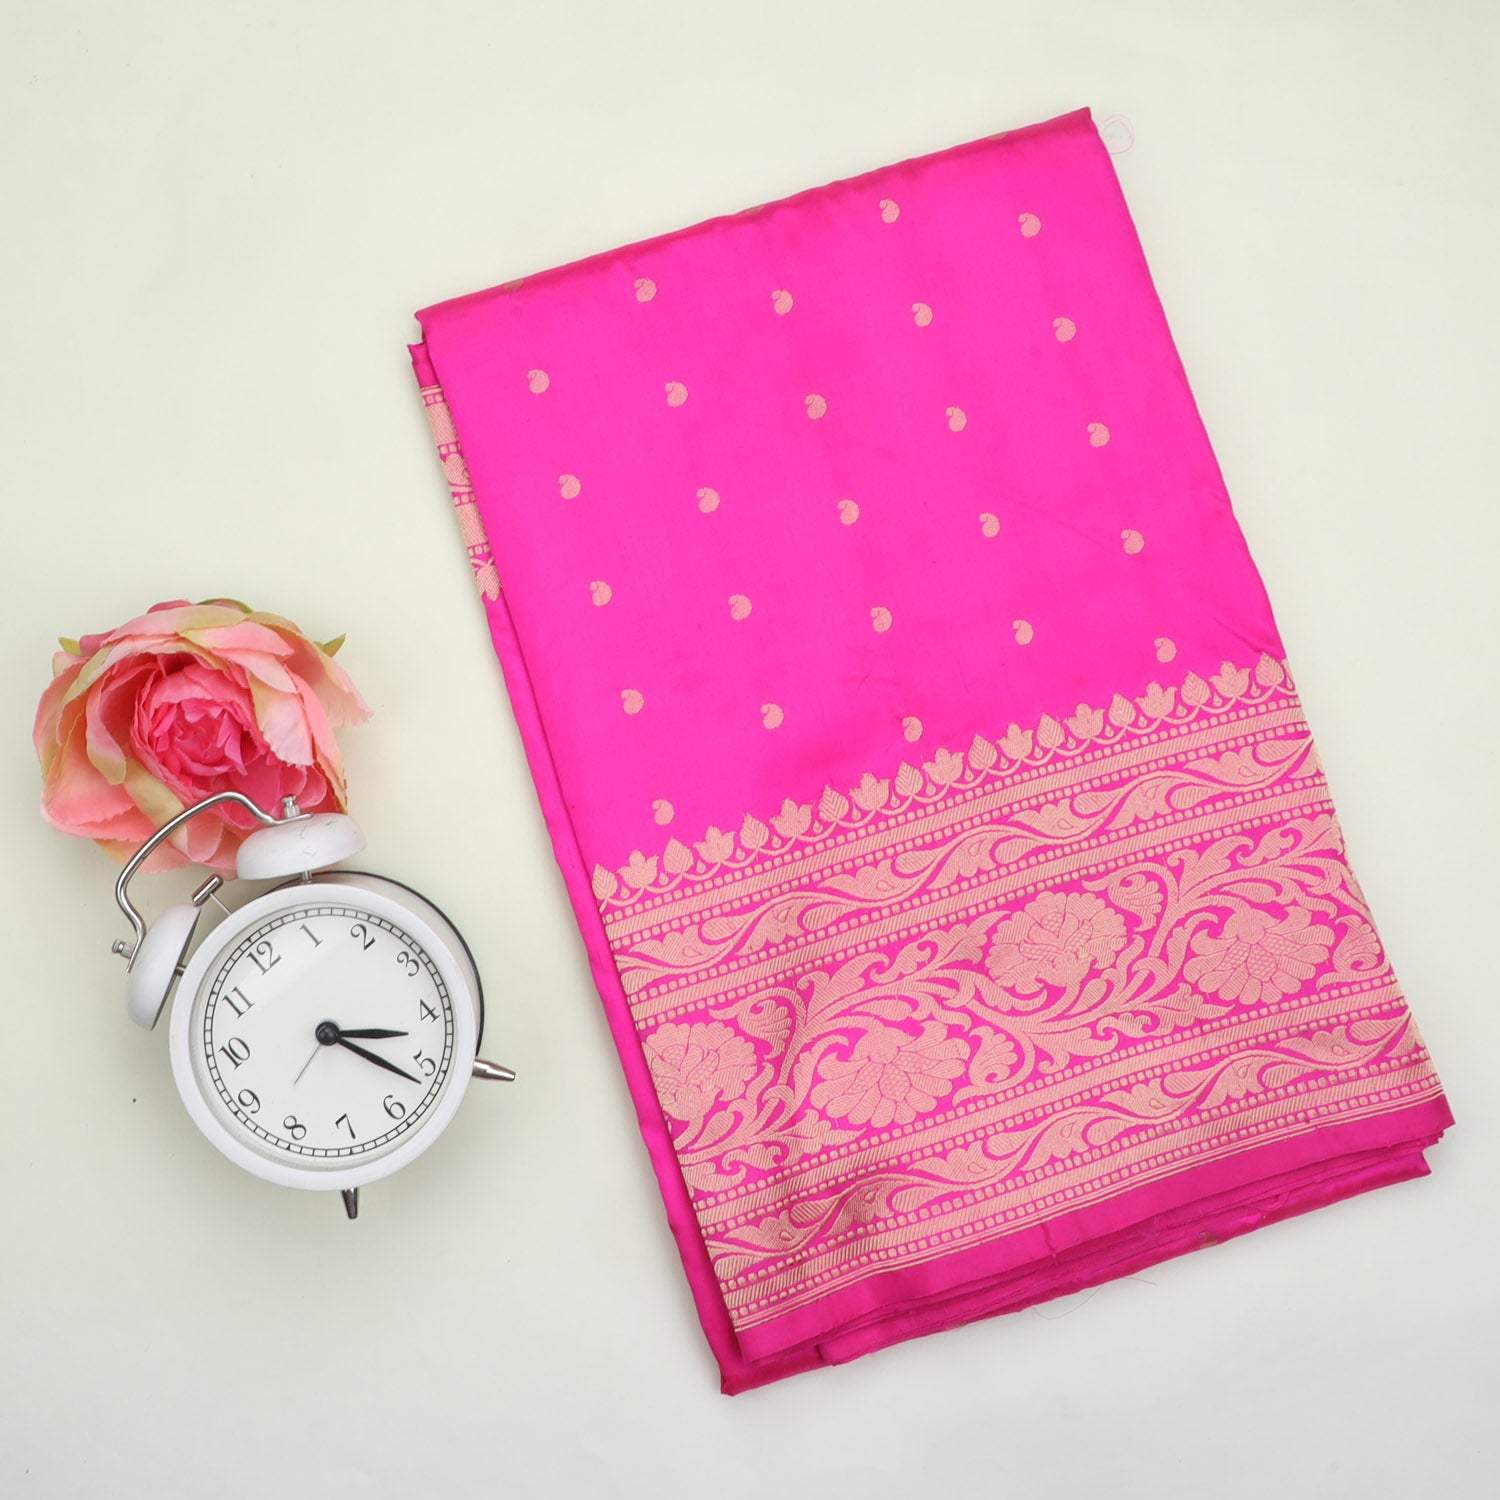 Bright Pink Banarasi Silk Saree With Floral Buttis - Singhania's